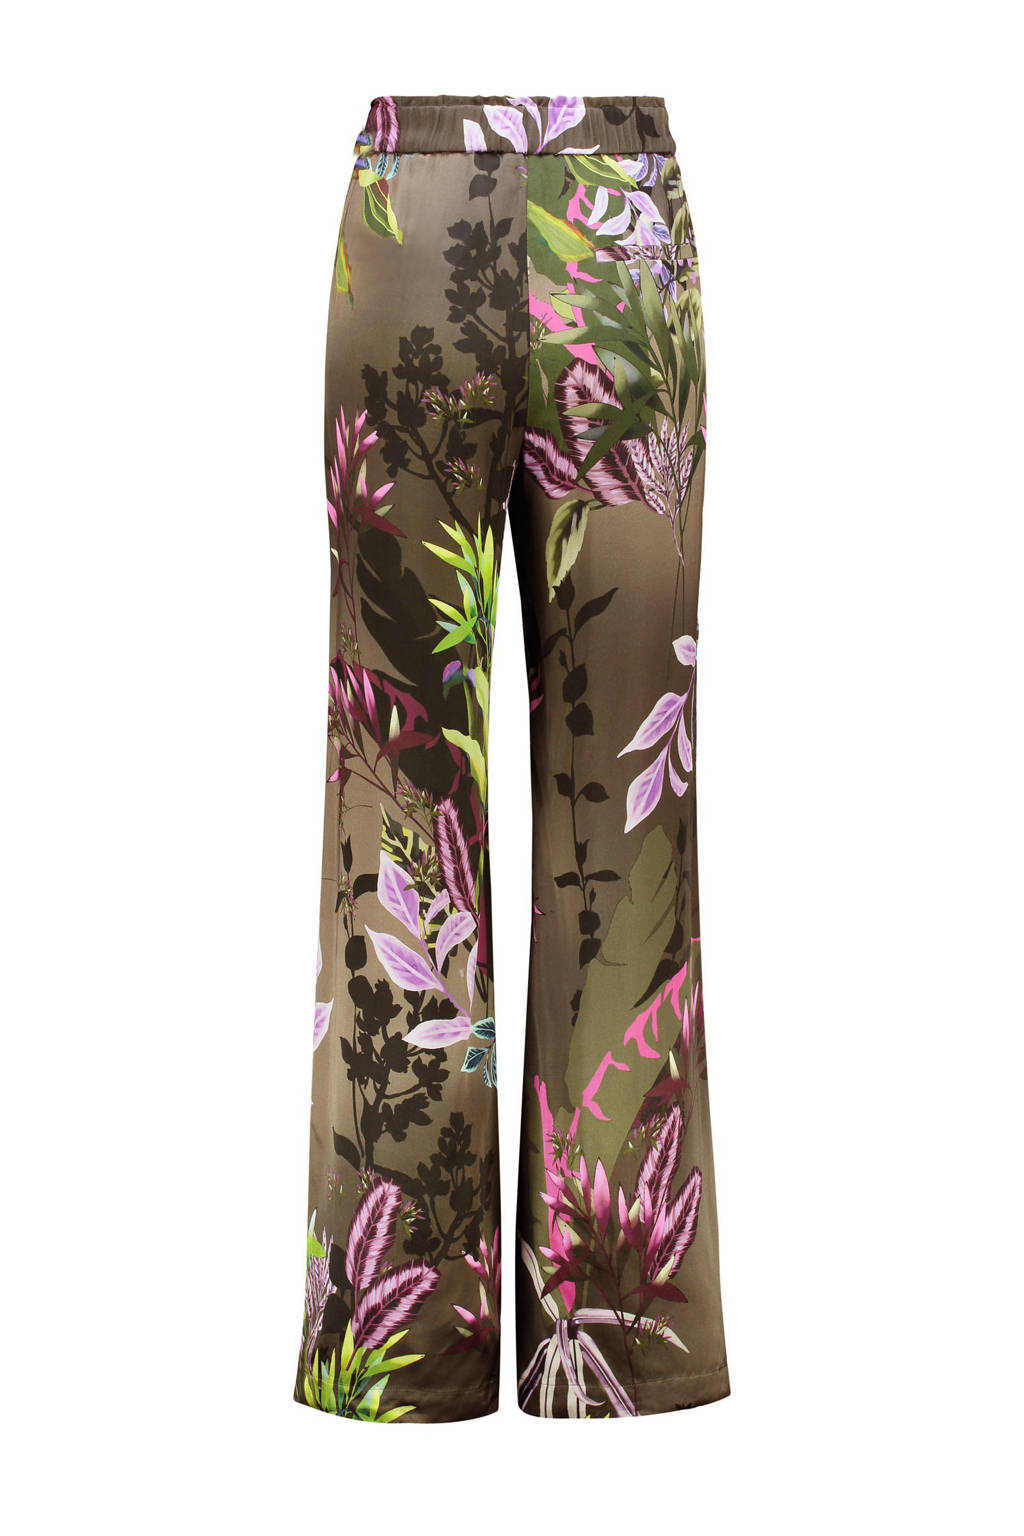 Claudia Sträter wide leg broek met bladprint bruin/groen/roze/turquoise